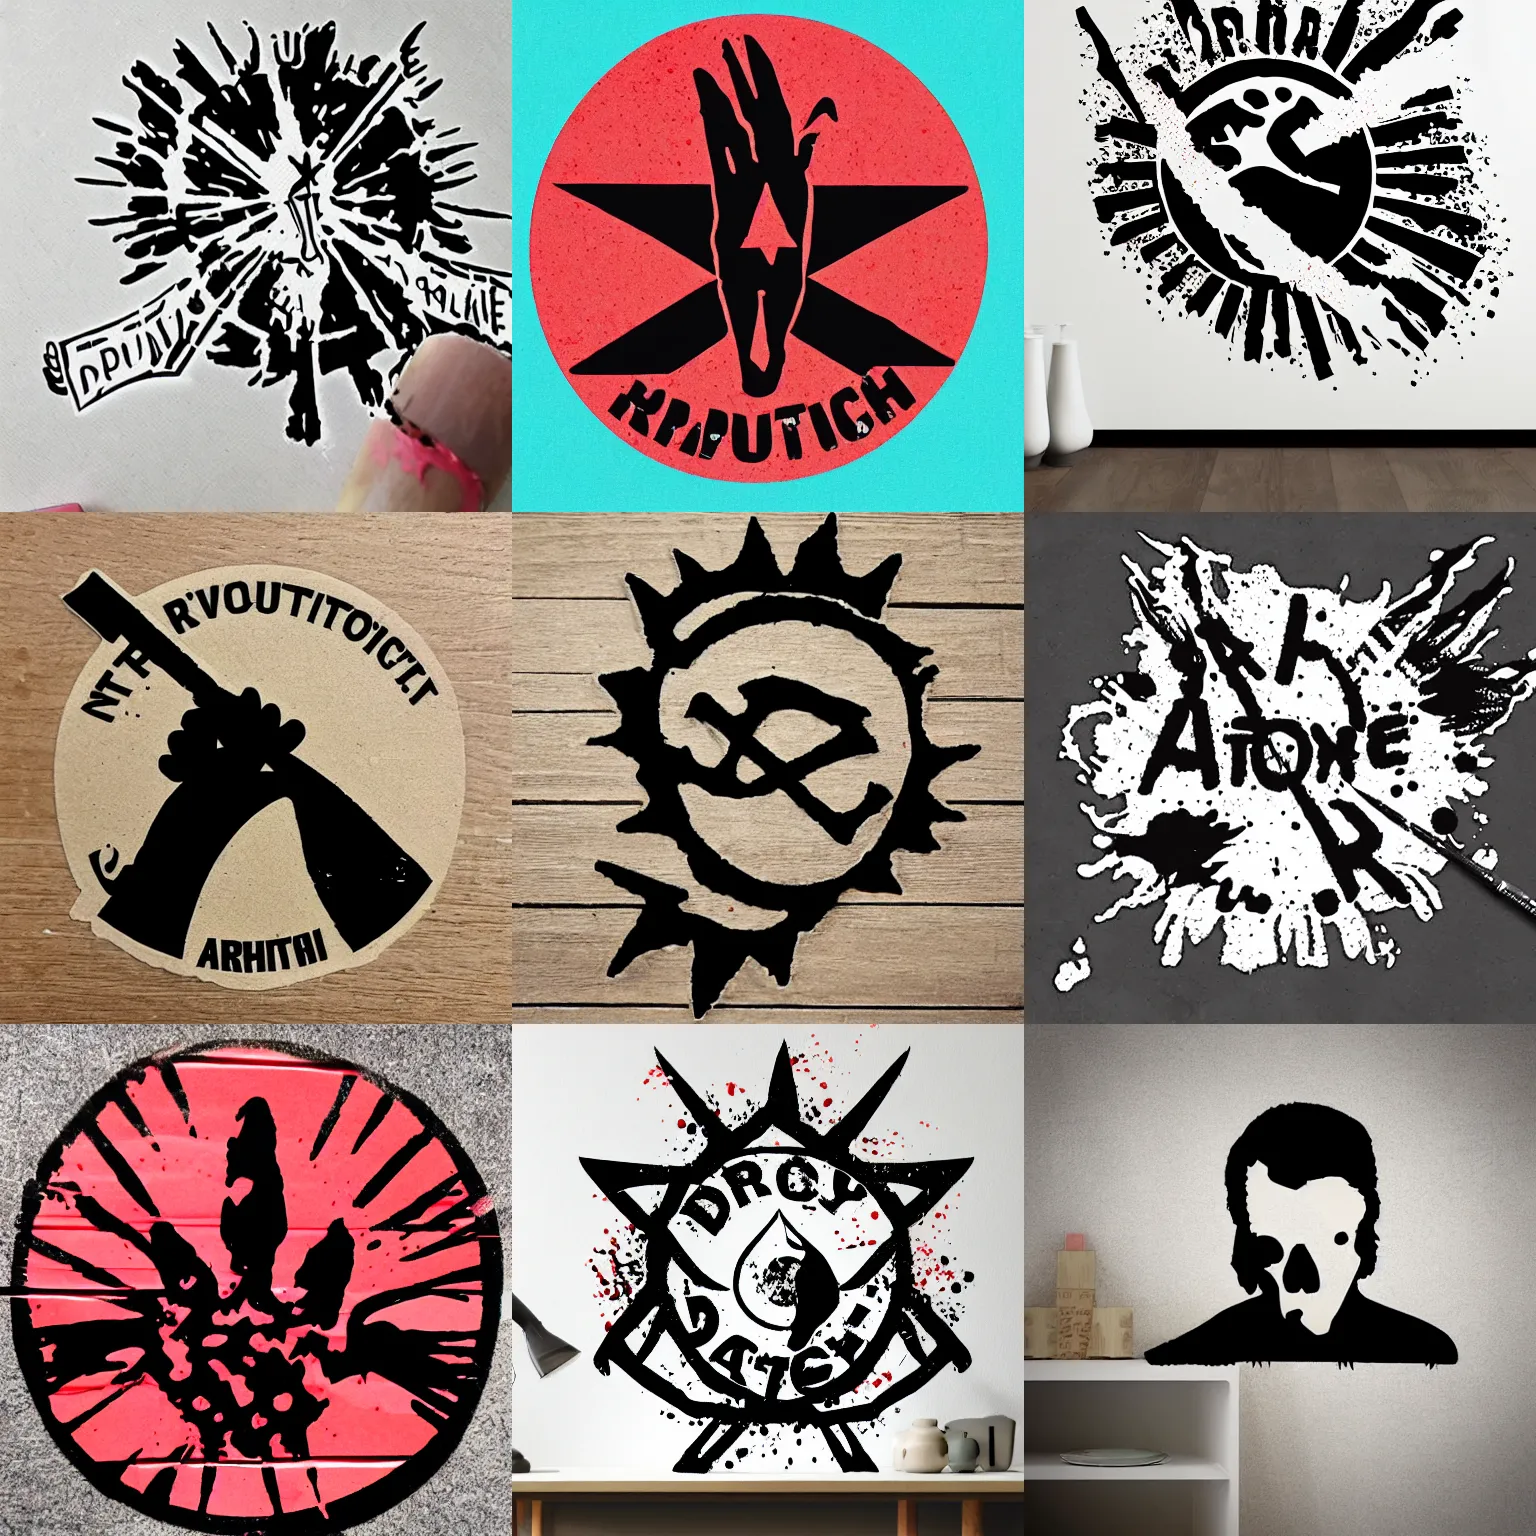 Prompt: die cut sticker revolutionary anarchist splatter paint blank background